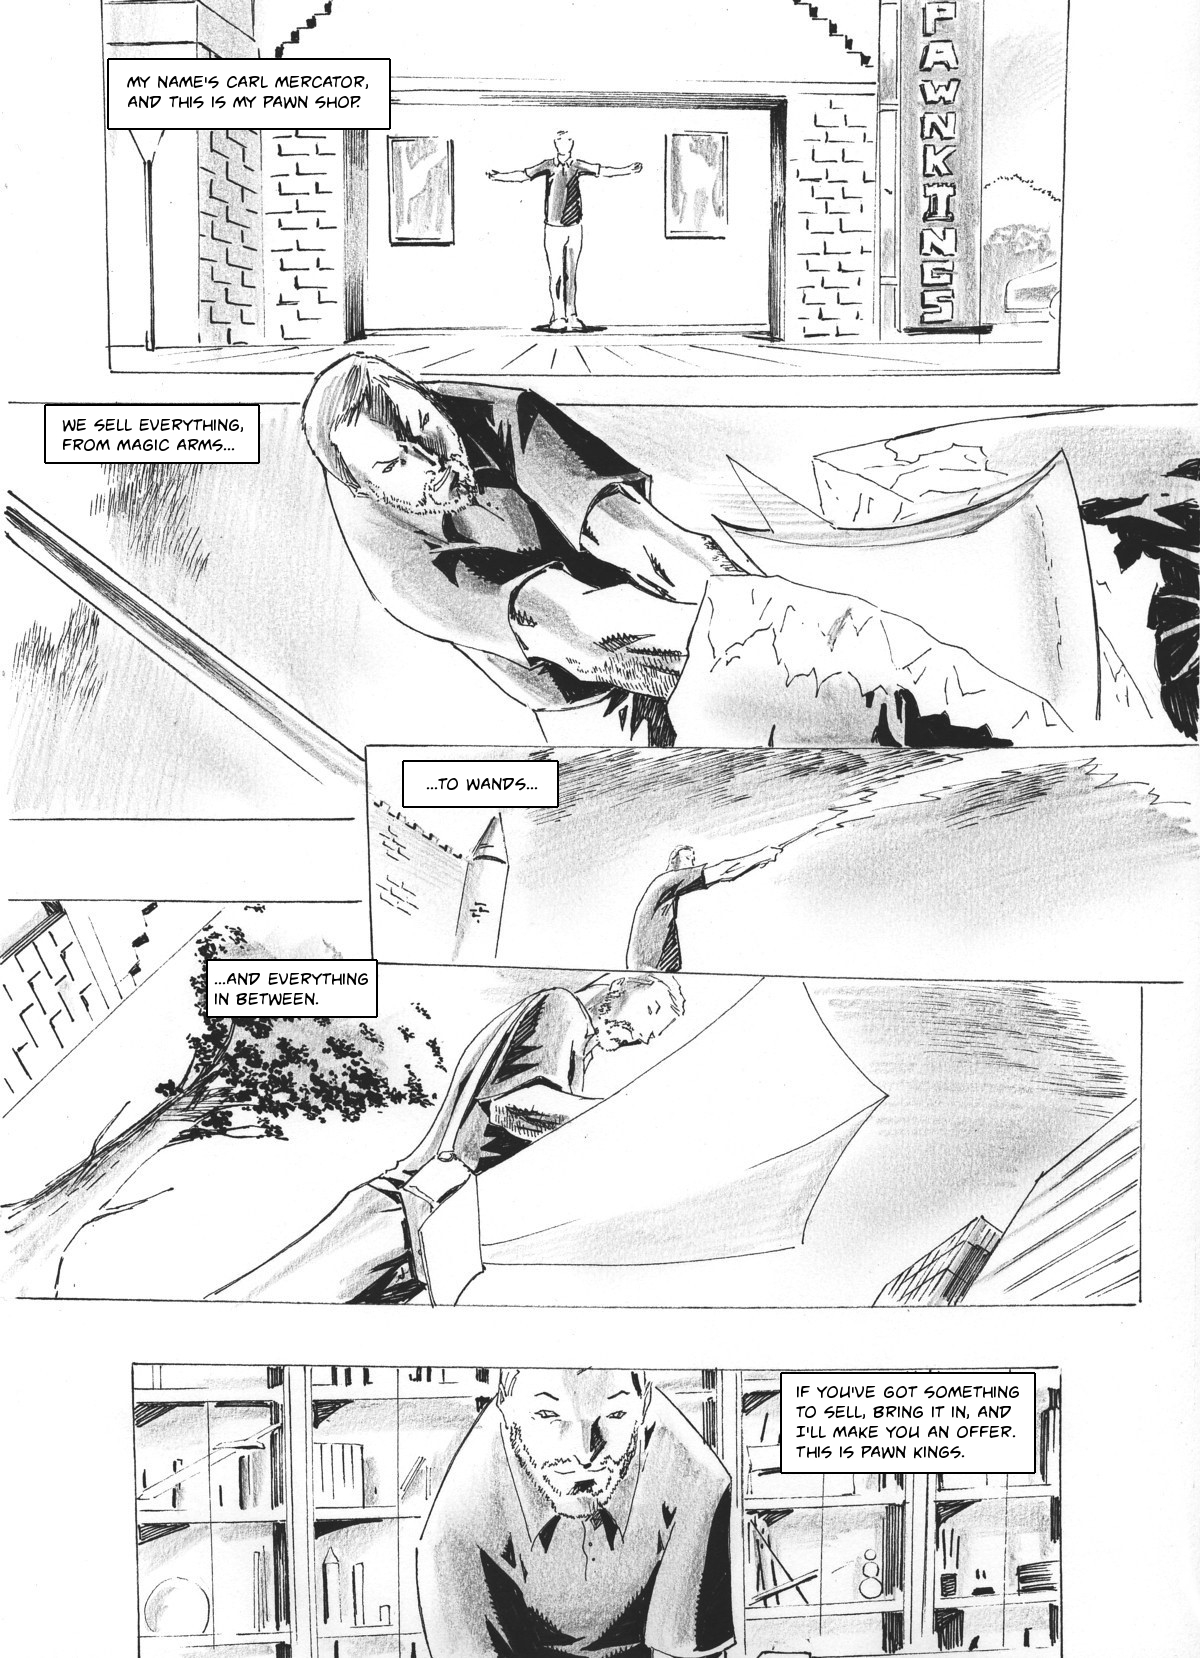 Zokusho: Pawn Kings–Page 1